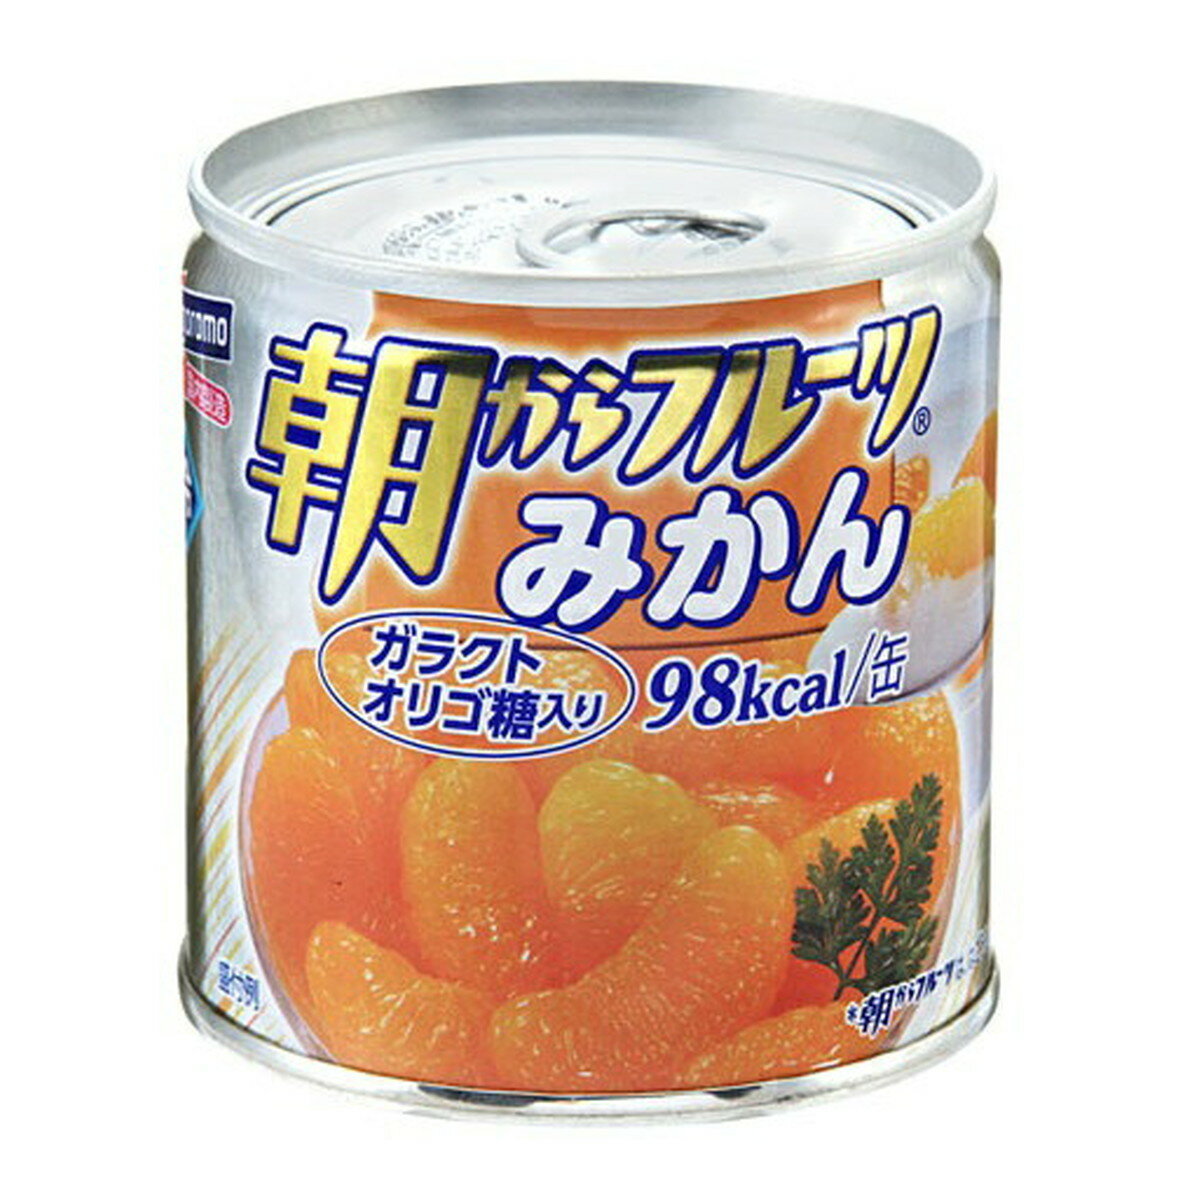 【送料込・まとめ買い×5個セット】はごろも 朝からフルーツ みかん 缶詰